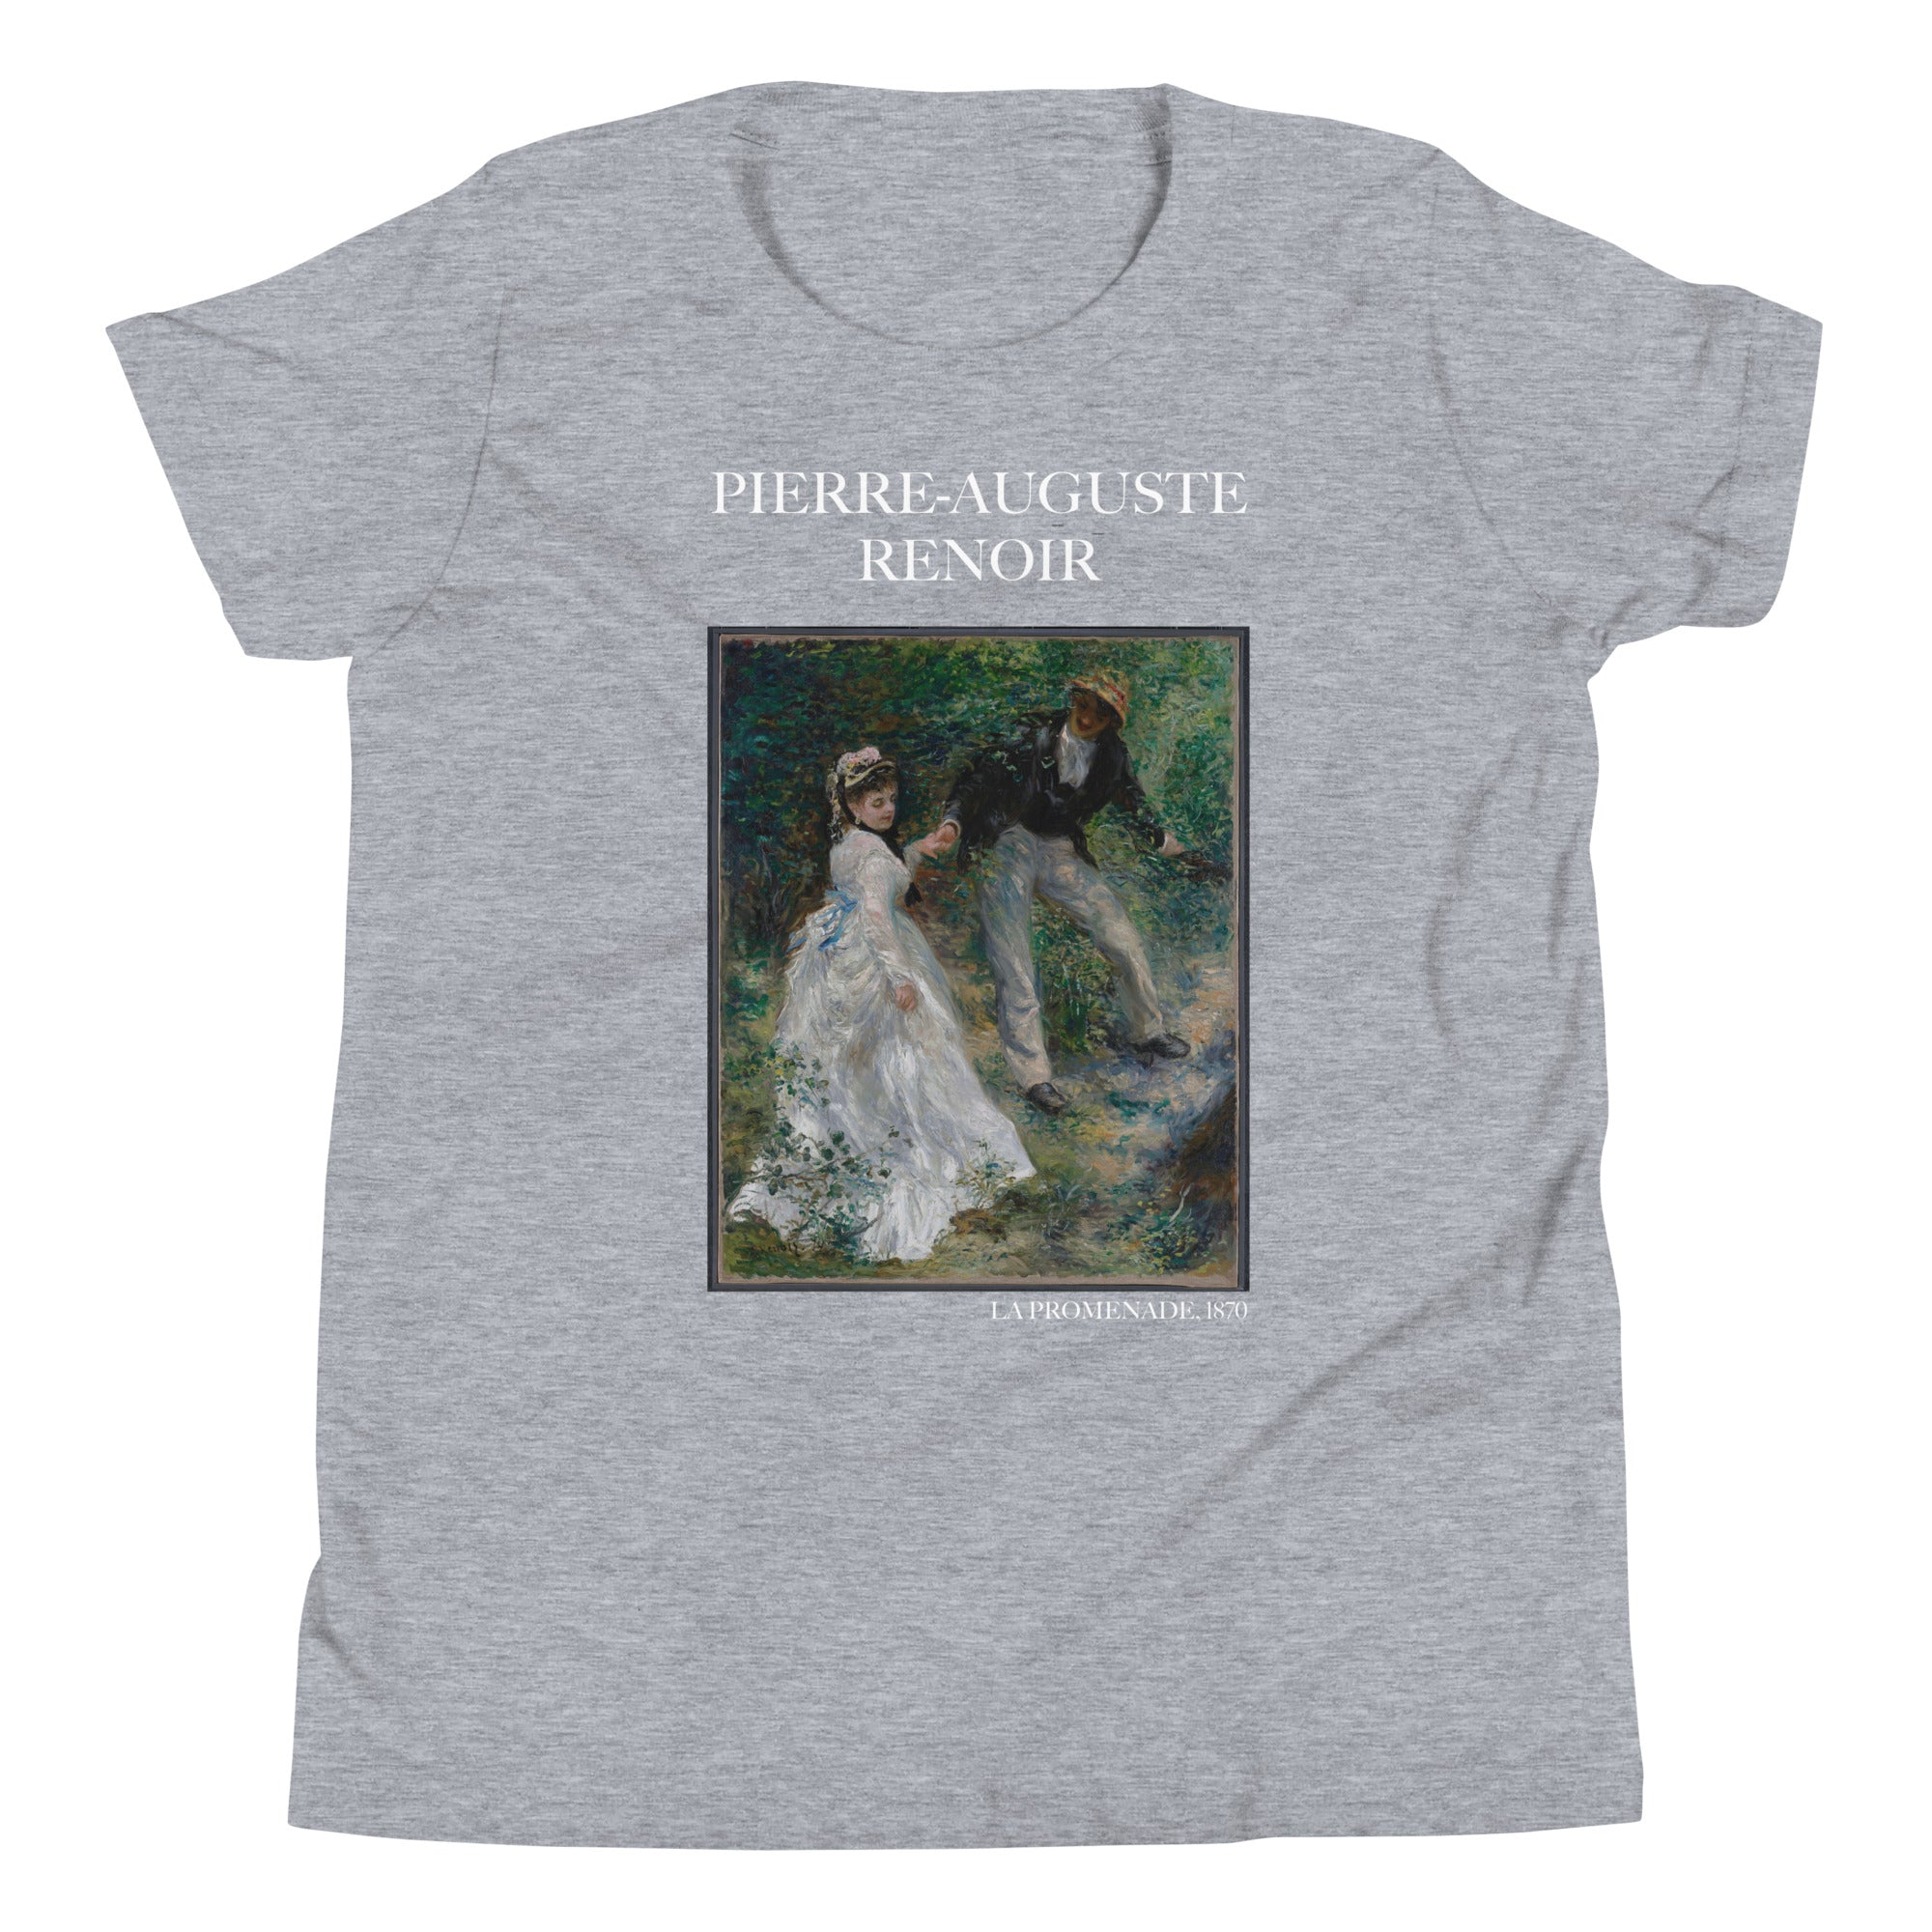 Pierre-Auguste Renoir 'La Promenade' Berühmtes Gemälde Kurzärmeliges T-Shirt | Premium Jugend Kunst T-Shirt